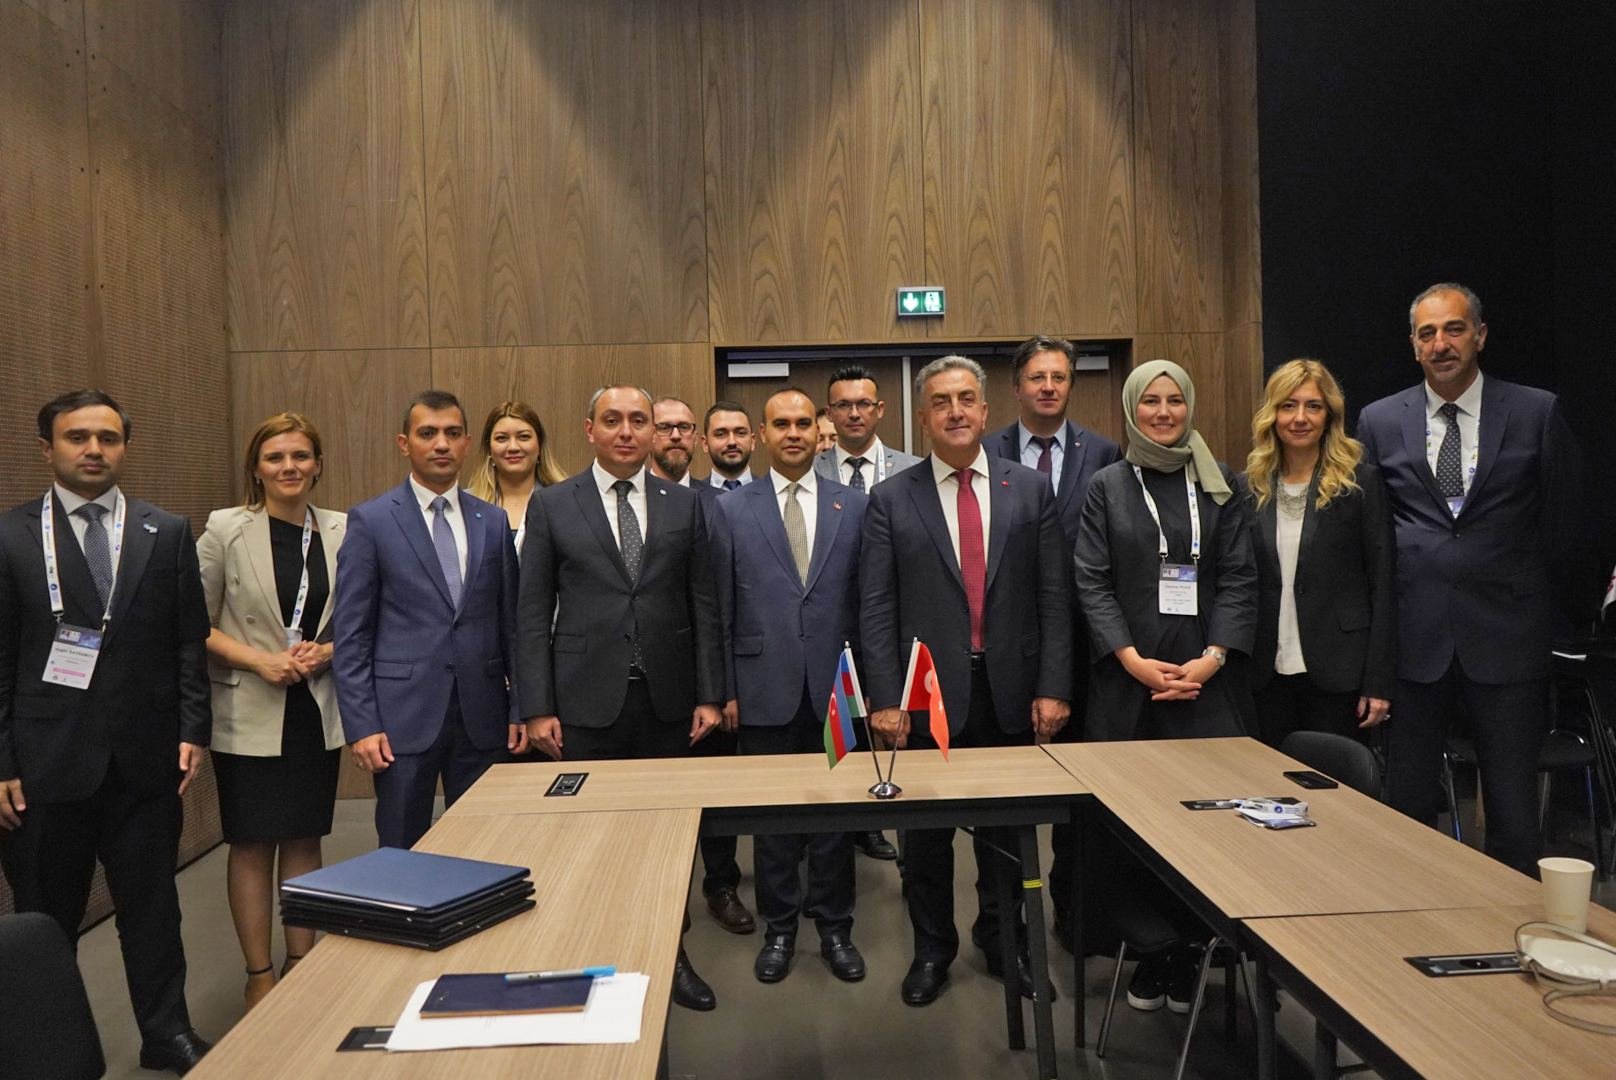 Azerbaijan, Türkiye sign memorandum on cooperation in space